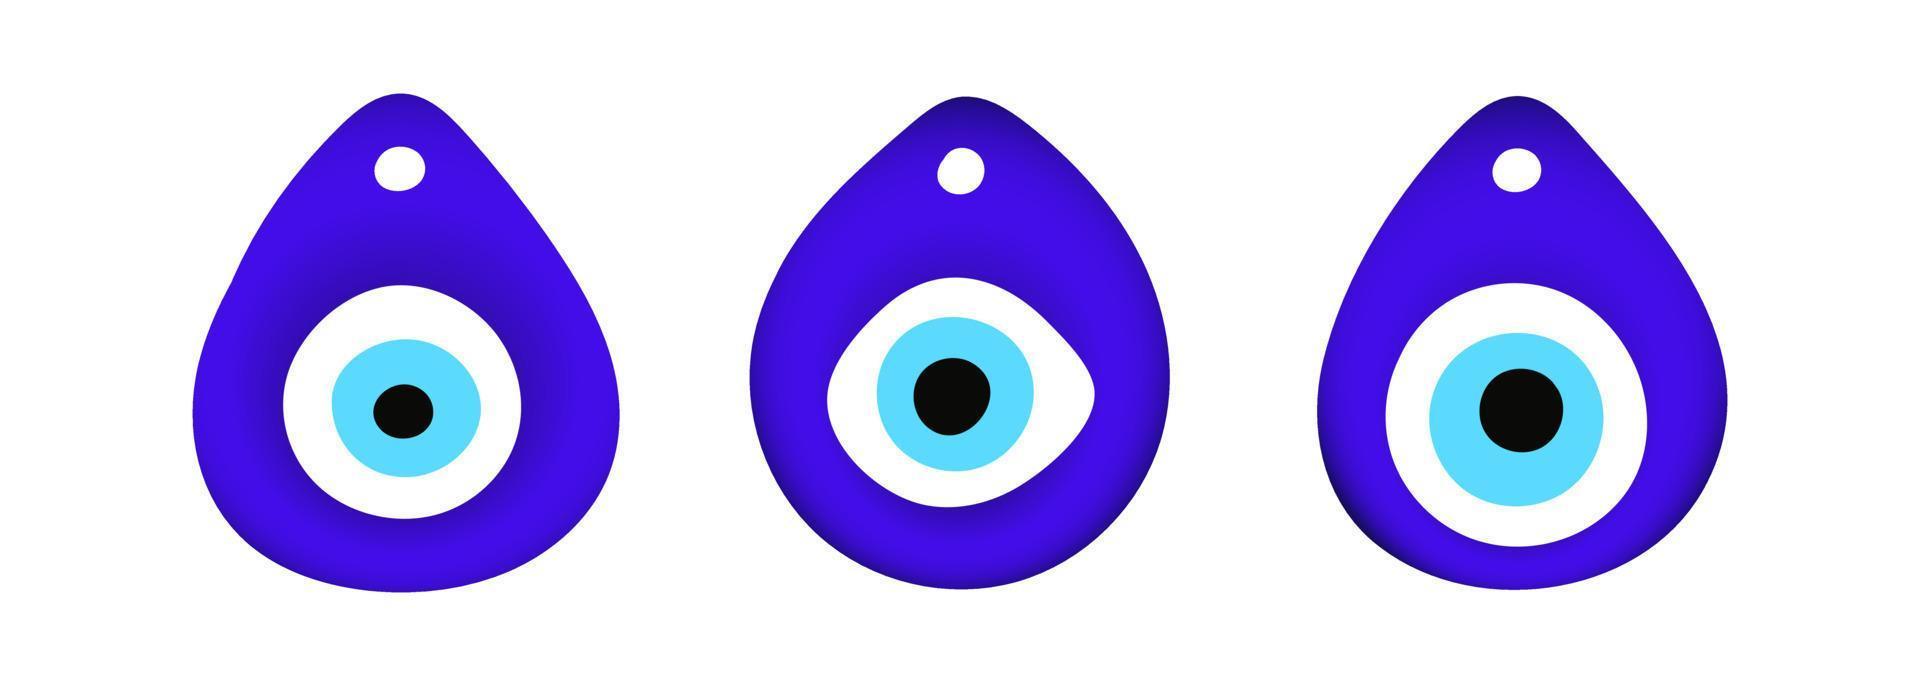 blauwe oosterse boze oog symbool amulet vlakke stijl ontwerp vectorillustratie geïsoleerd op een witte achtergrond. vector